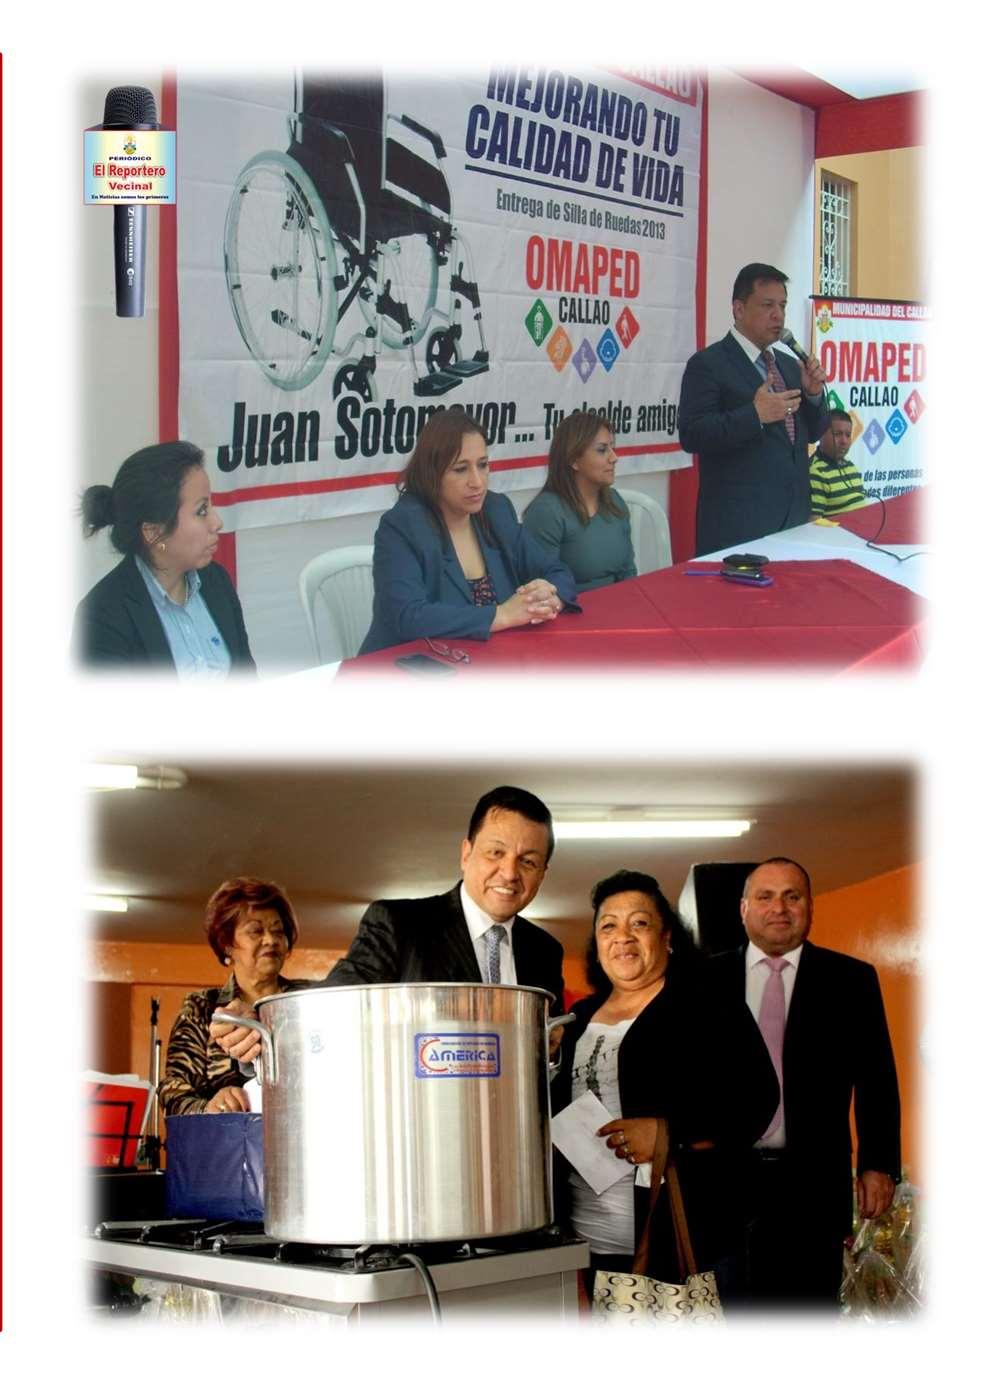 OBJETIVOS Promover el Desarrollo Económico de la Provincia Constitucional del Callao.